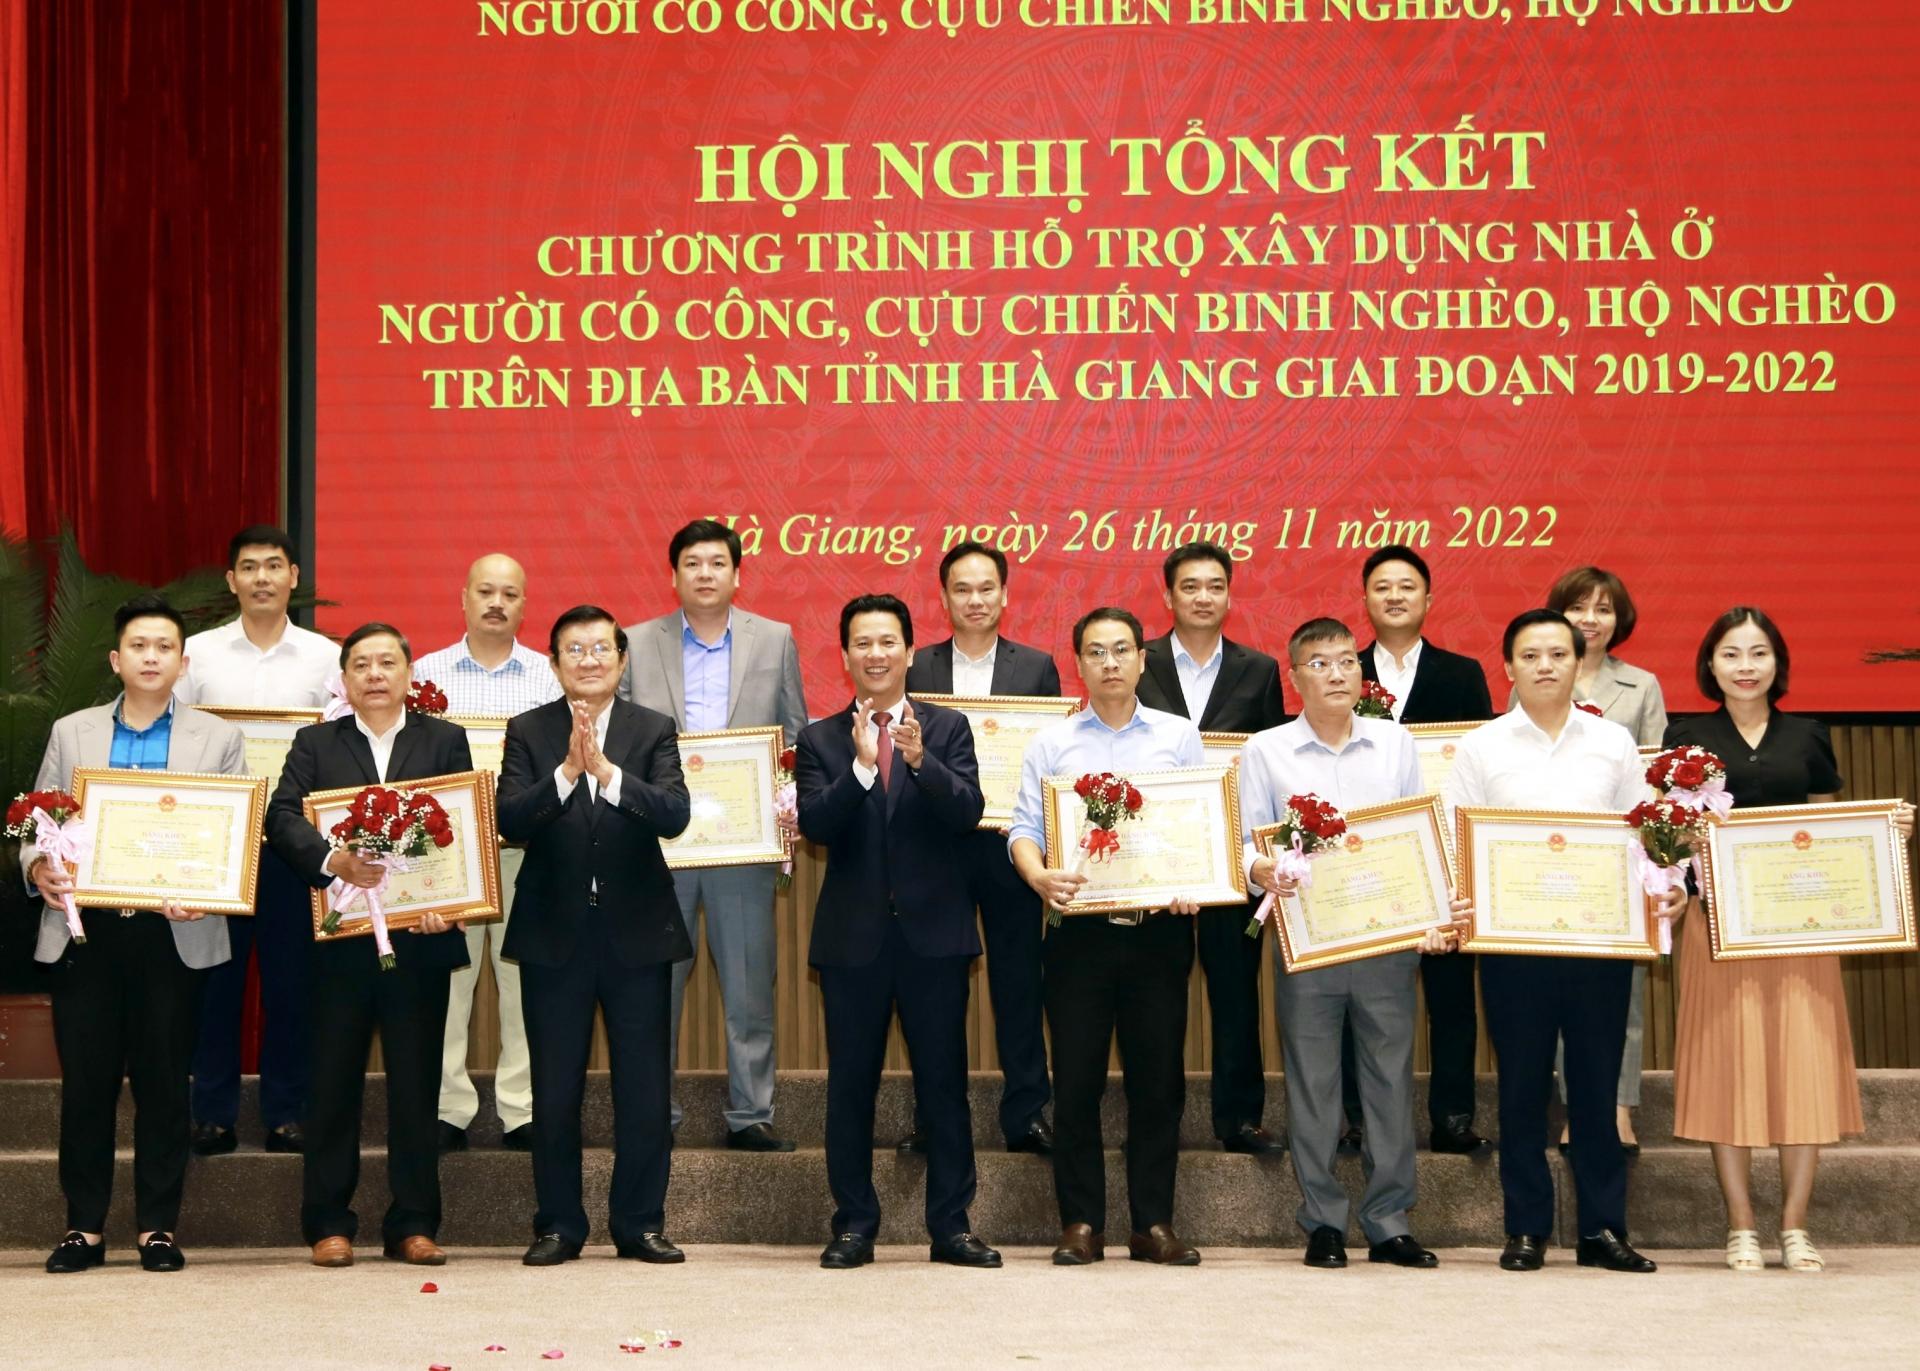 Nguyên Chủ tịch nước Trương Tấn Sang và Bí thư Tỉnh ủy Đặng Quốc Khánh tặng Bằng khen cho các tổ chức, doanh nghiệp có đóng góp cho Chương trình hỗ trợ xây dựng nhà ở của tỉnh